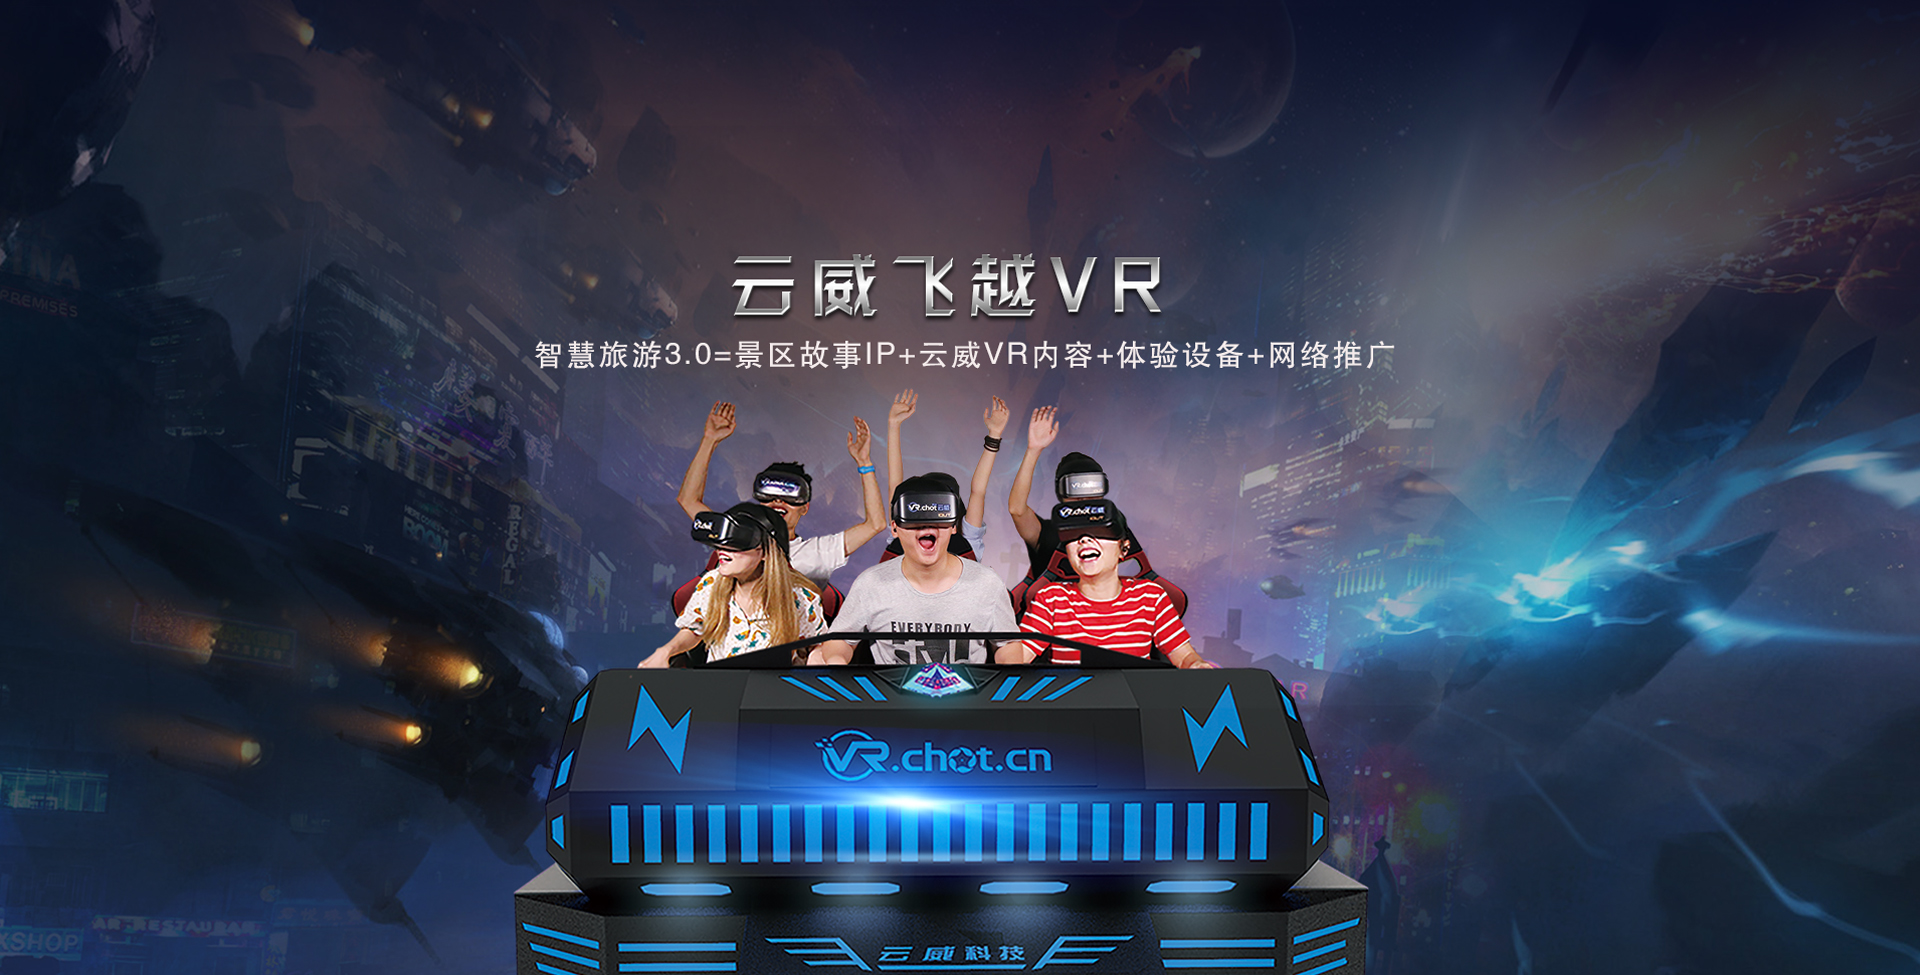  beat365亚洲官方网站VR 飞越解放碑VR  VR行业应用  VR厂商  VR硬件  VR软件  VR智慧旅游